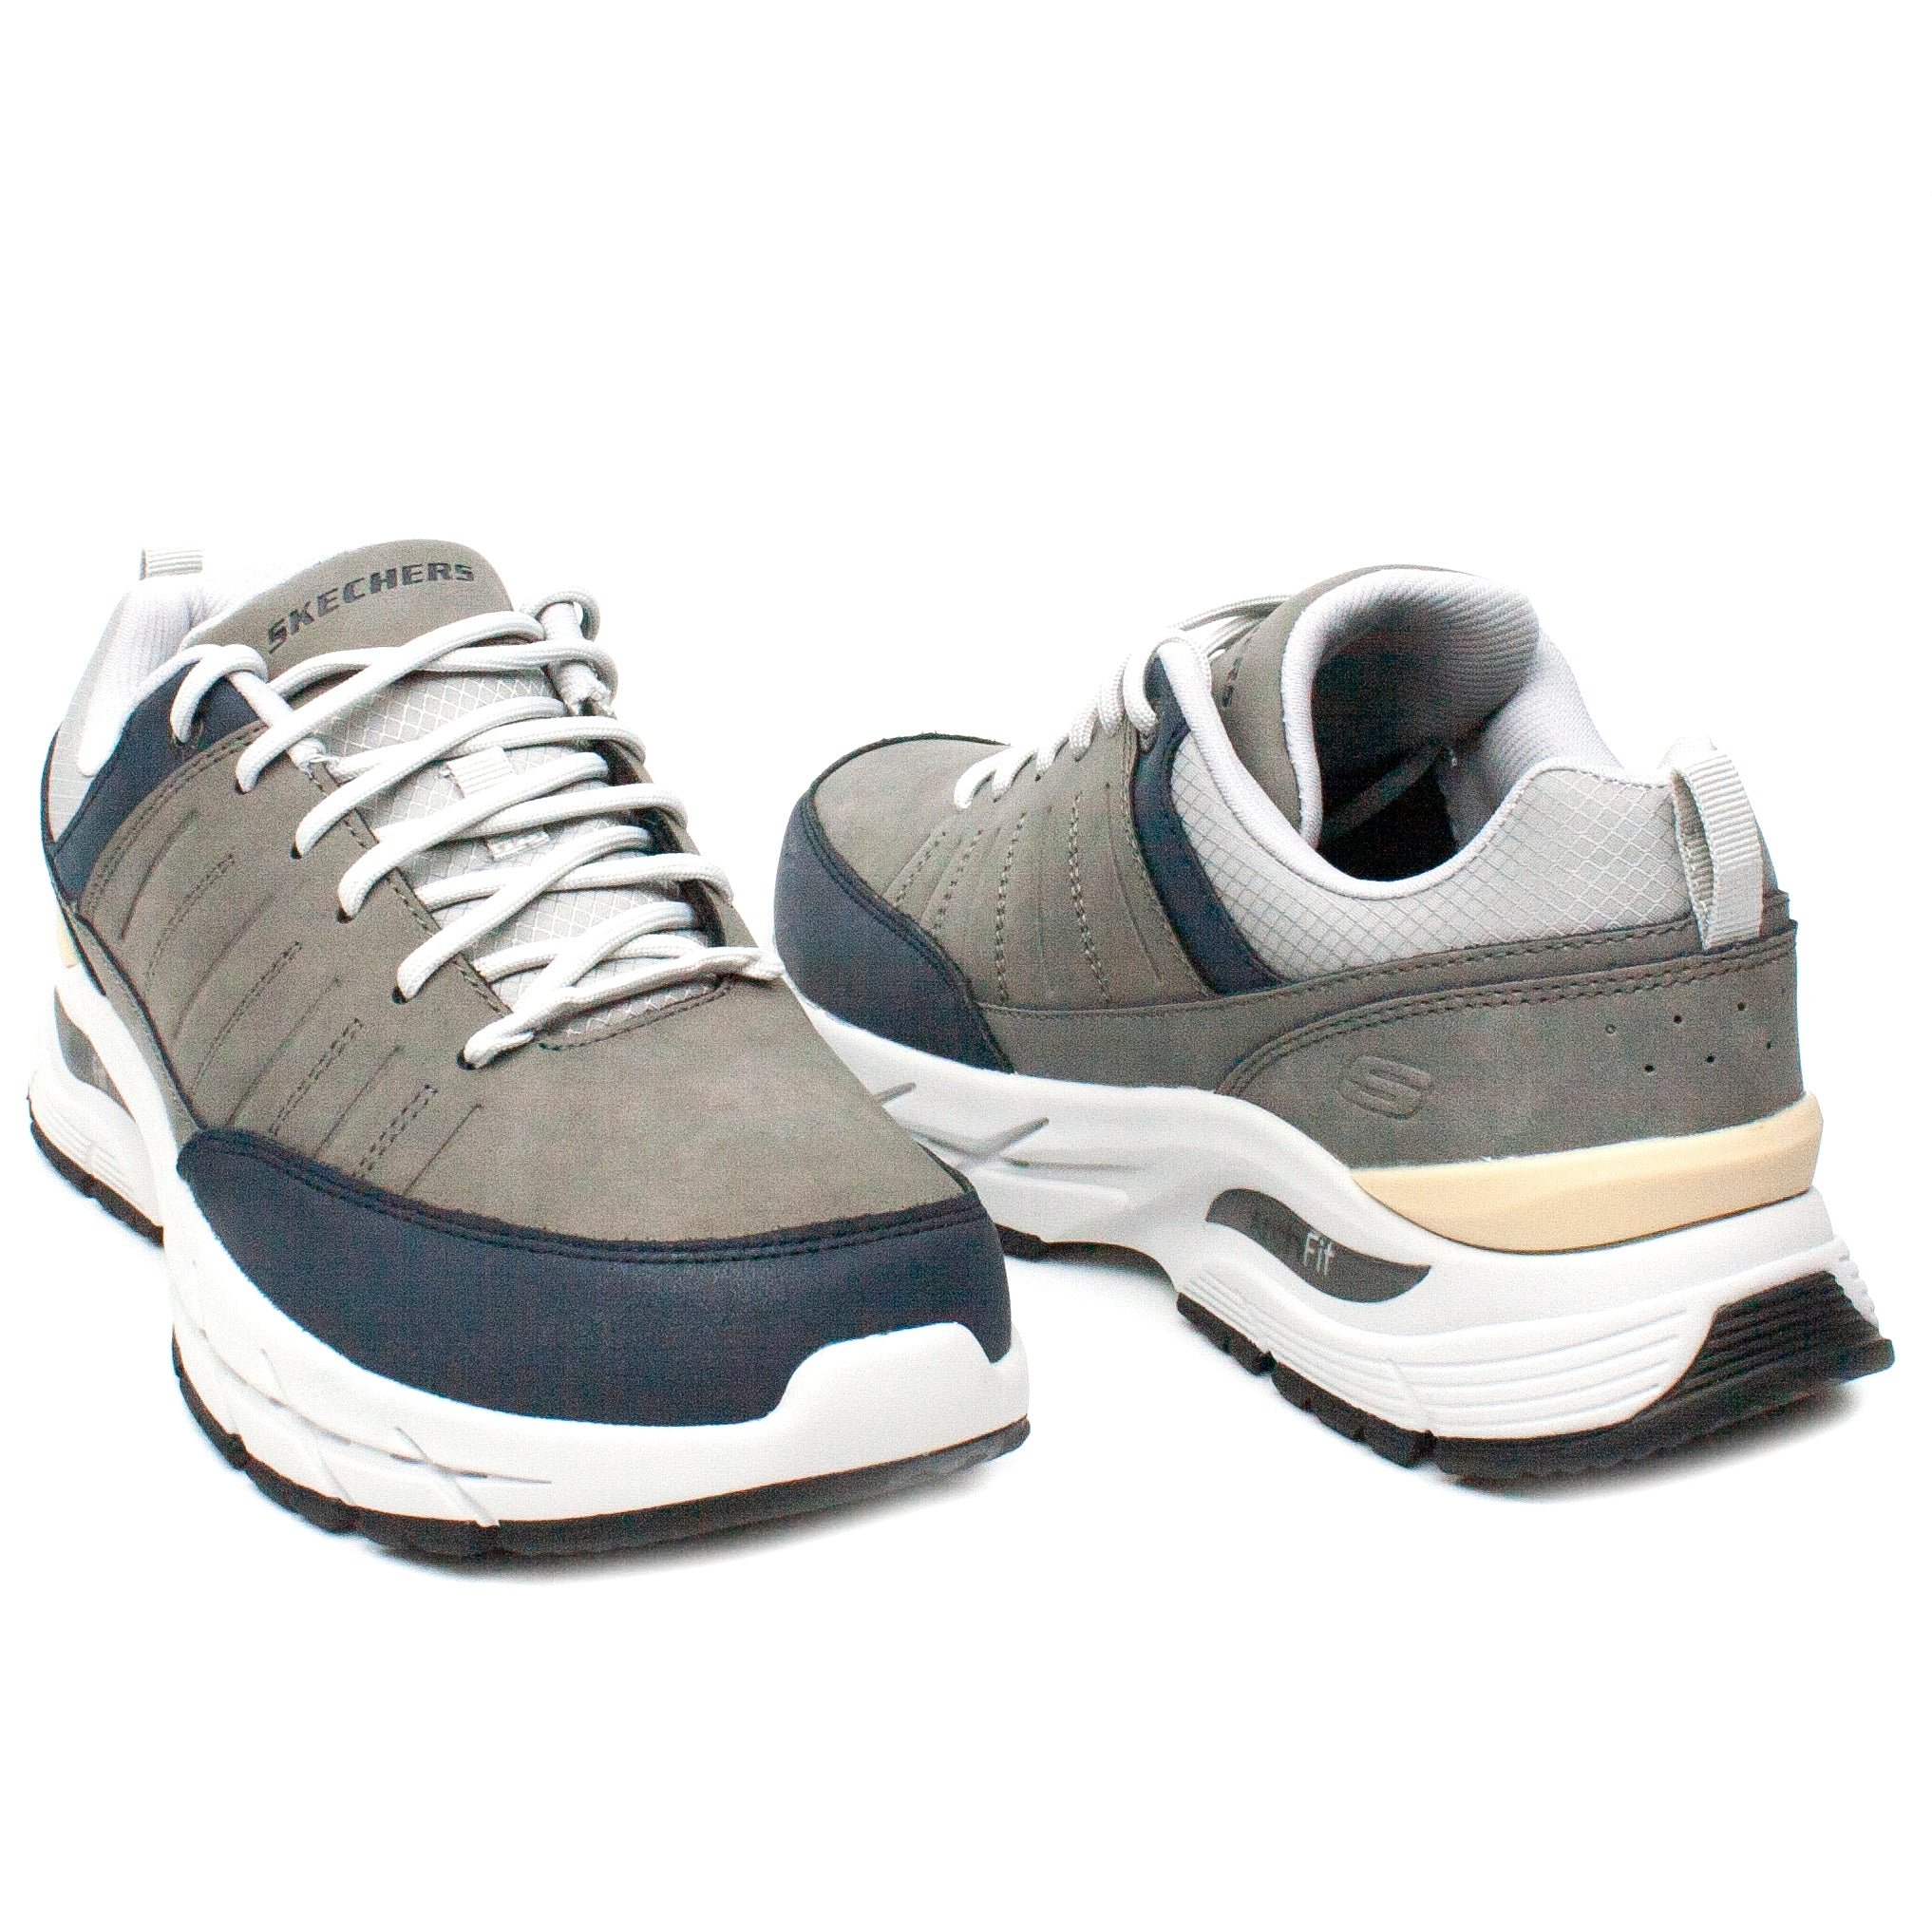 Skechers pantofi barbati sport 210319 gri IB2189-GRI